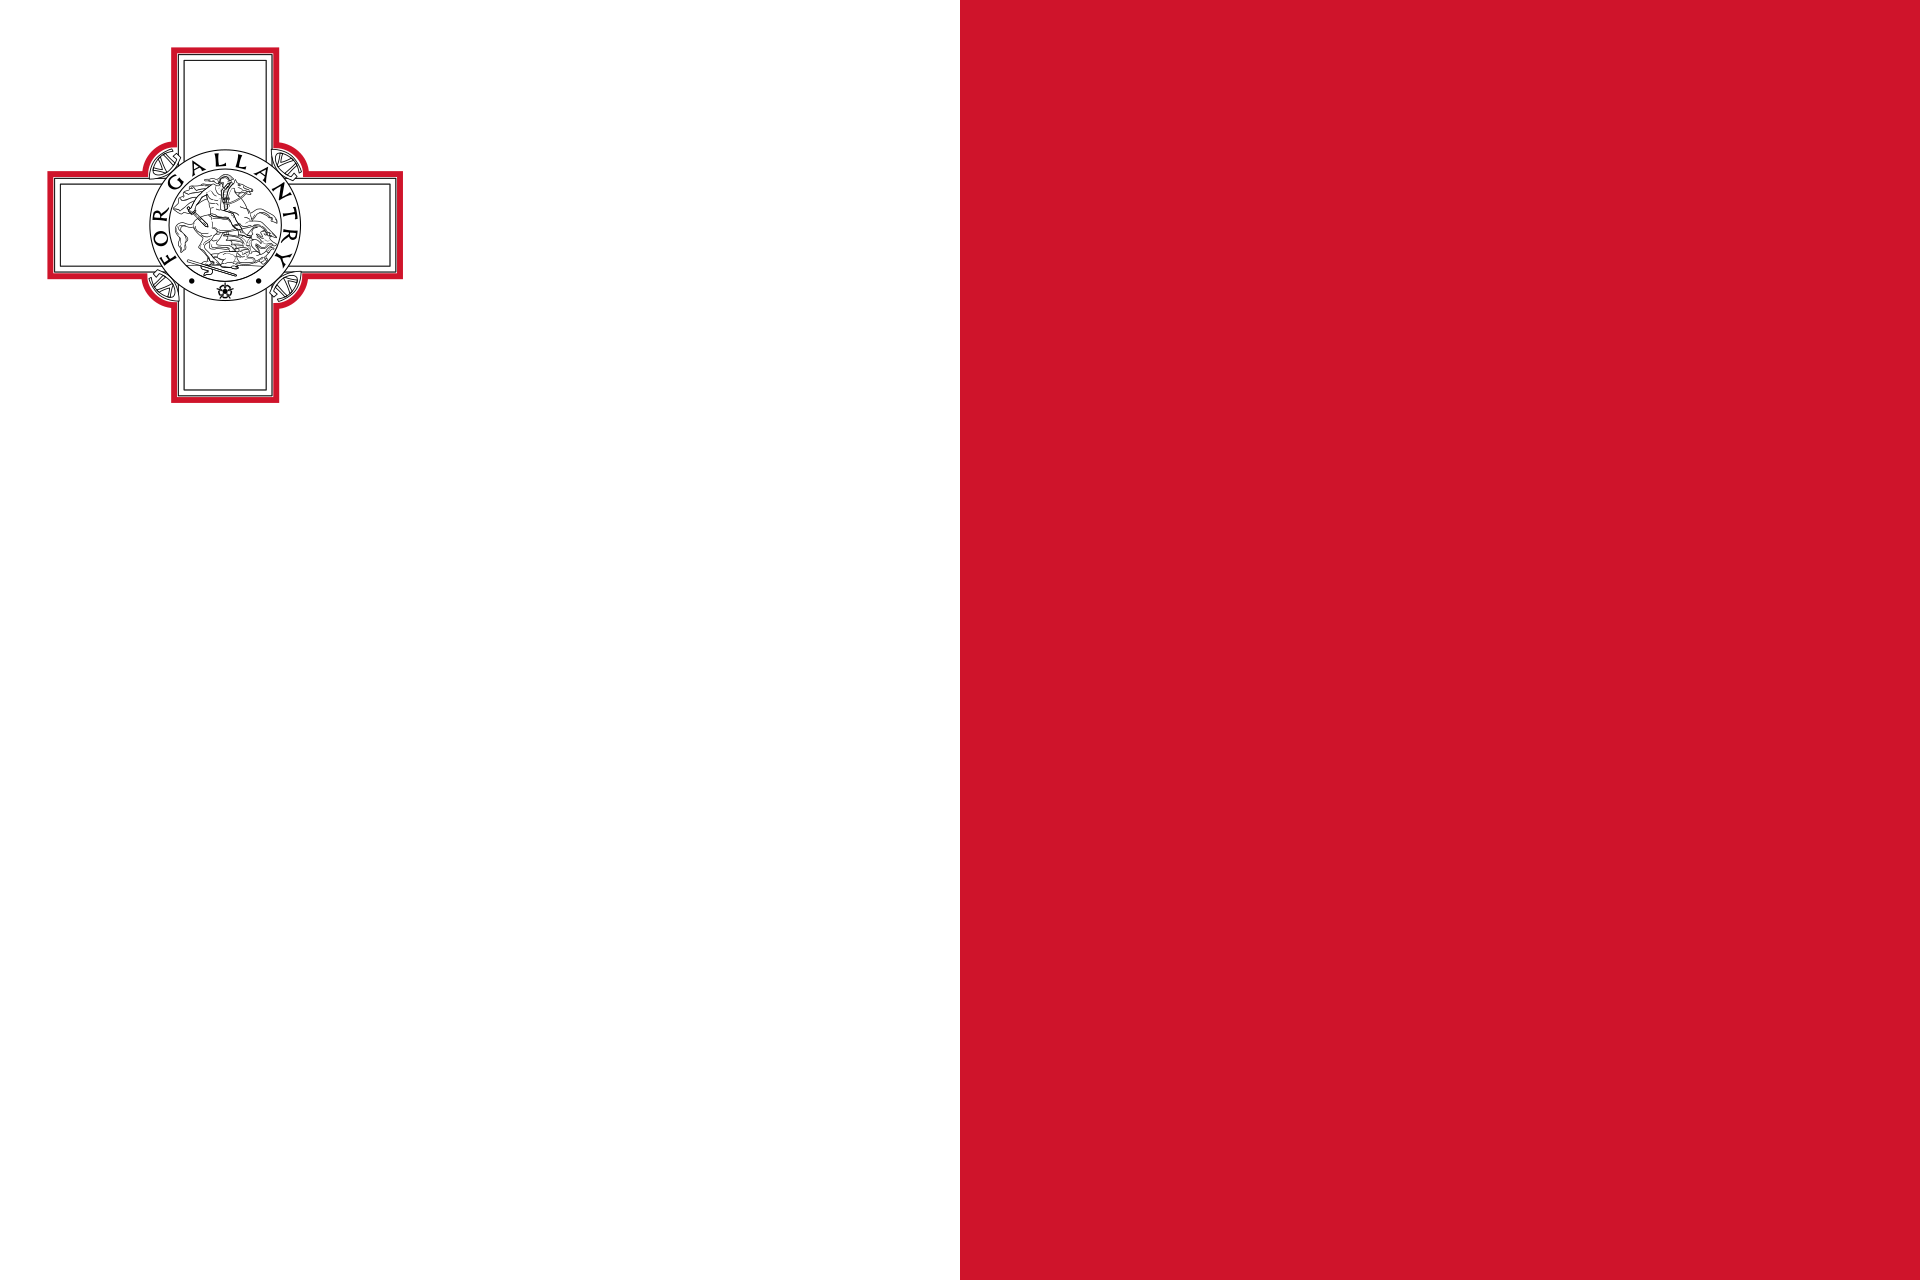 Quốc kỳ Malta